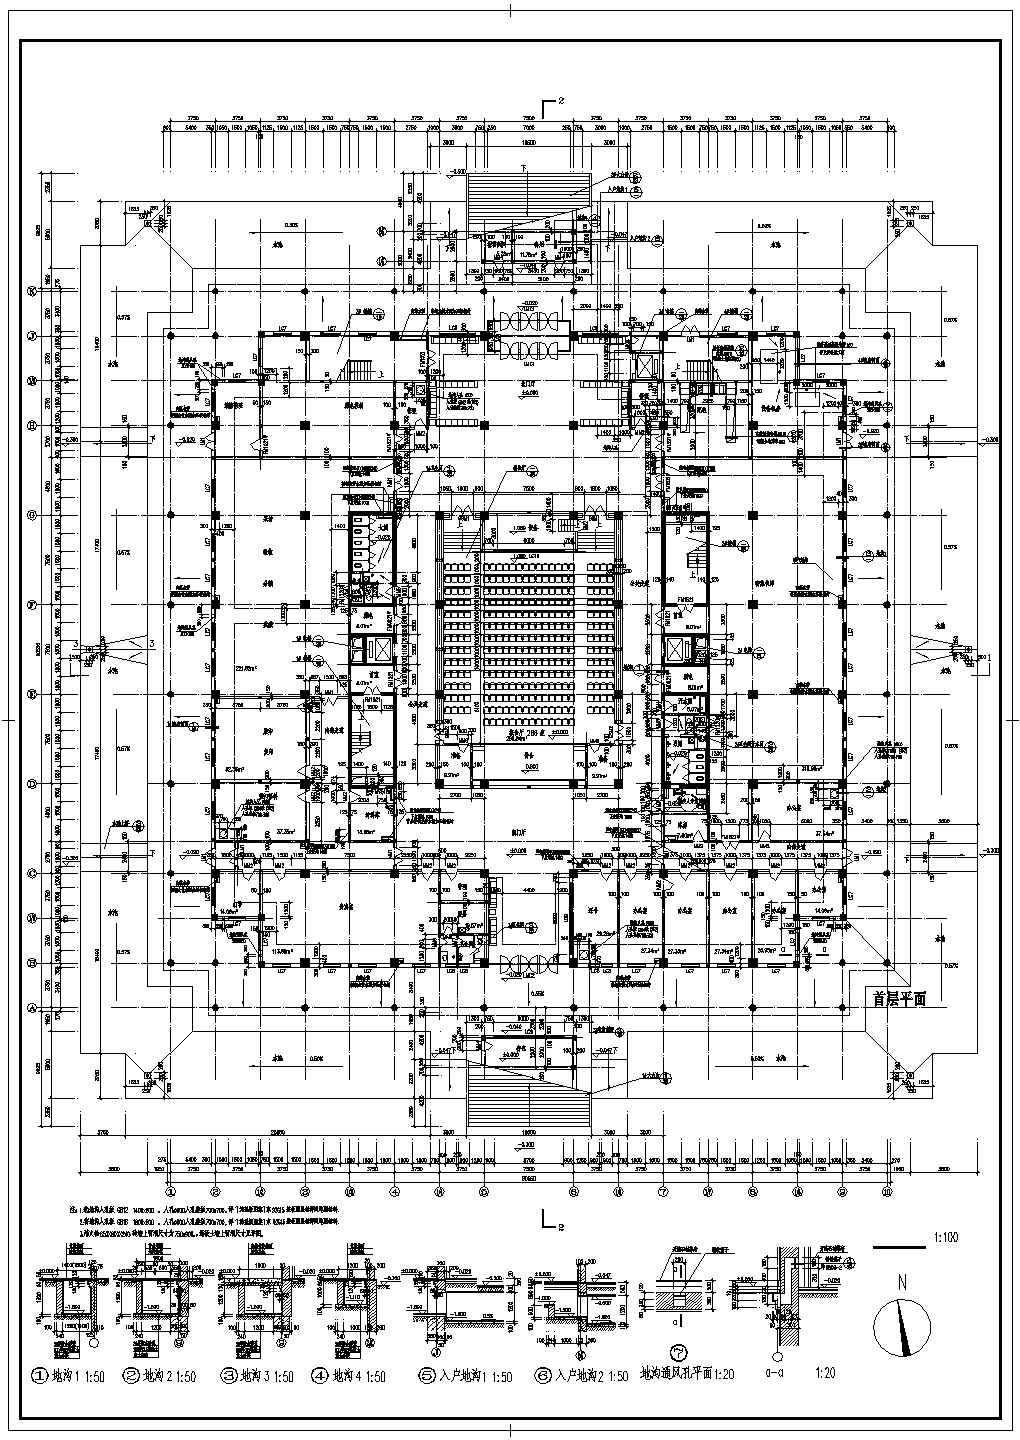 七层师范学院图书馆建筑平面设计图